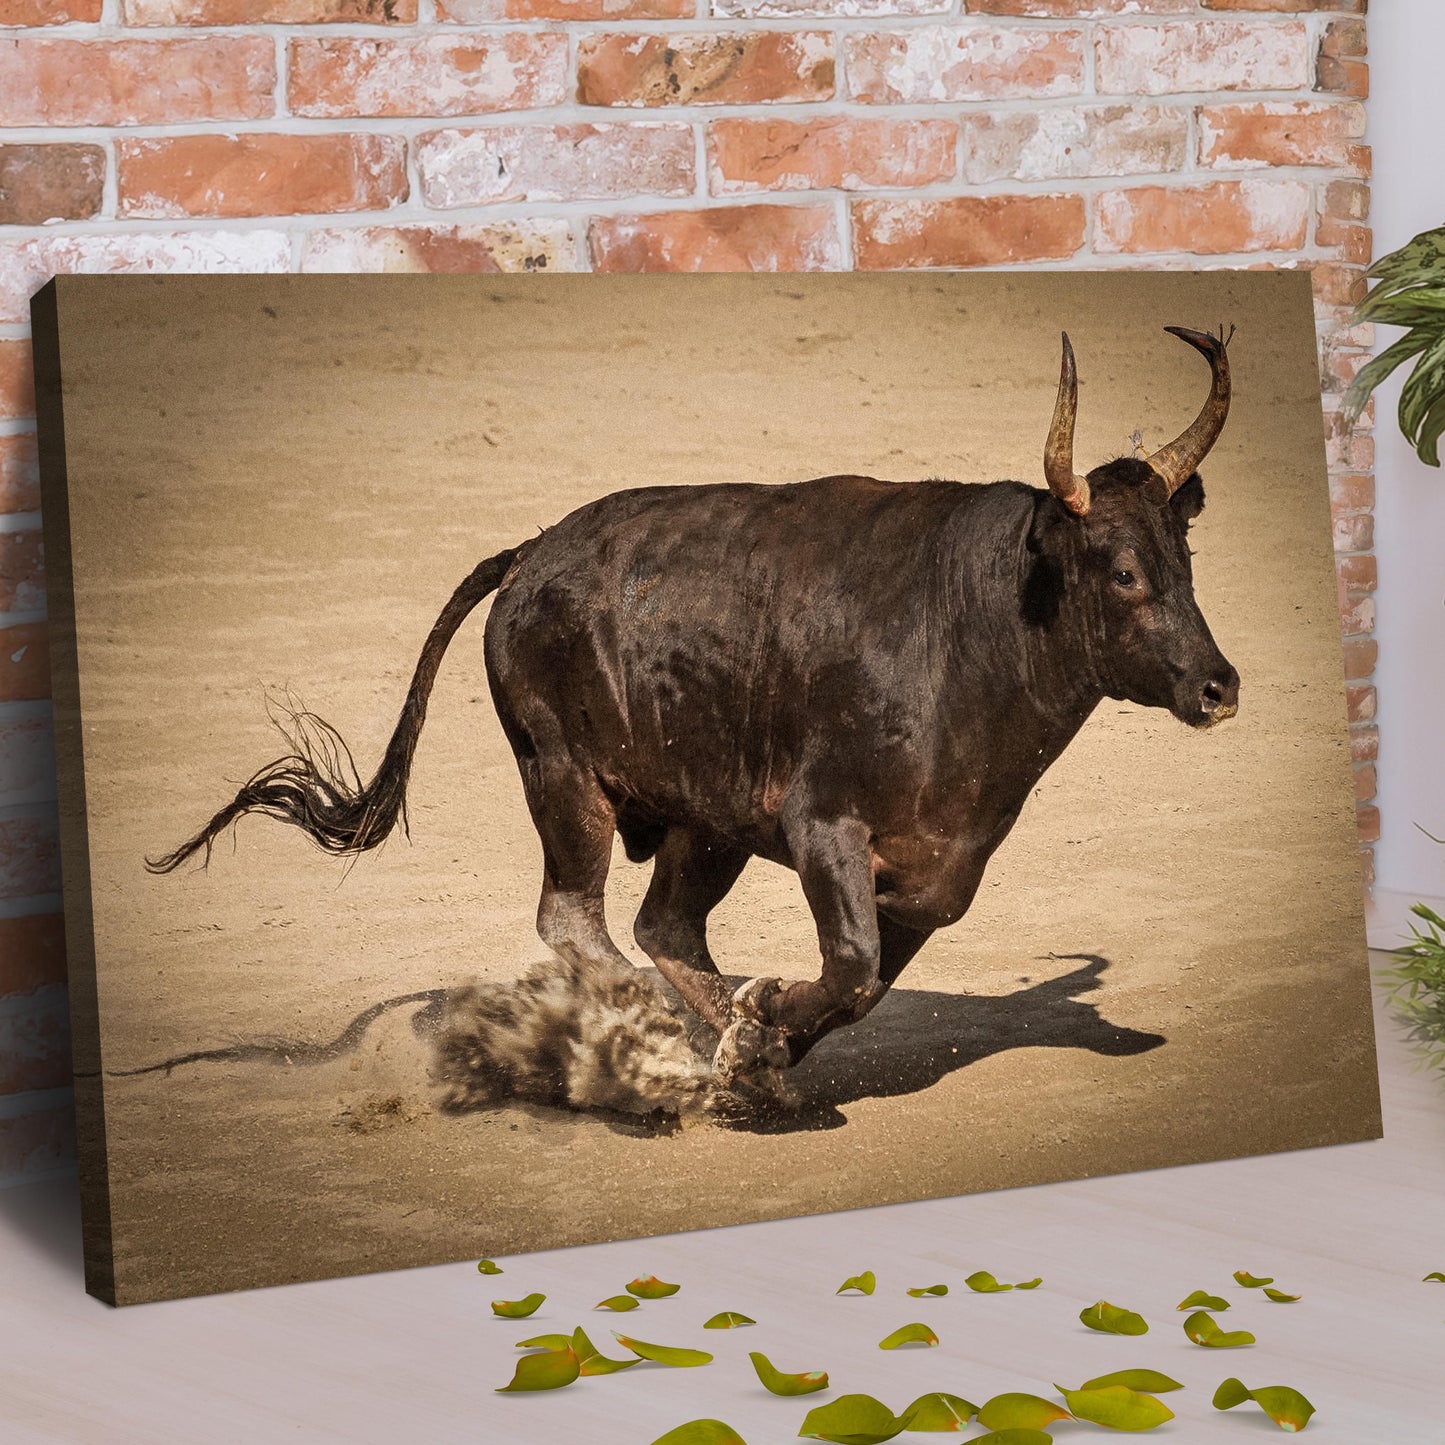 Bull Rush Charging Bull Canvas Wall Art